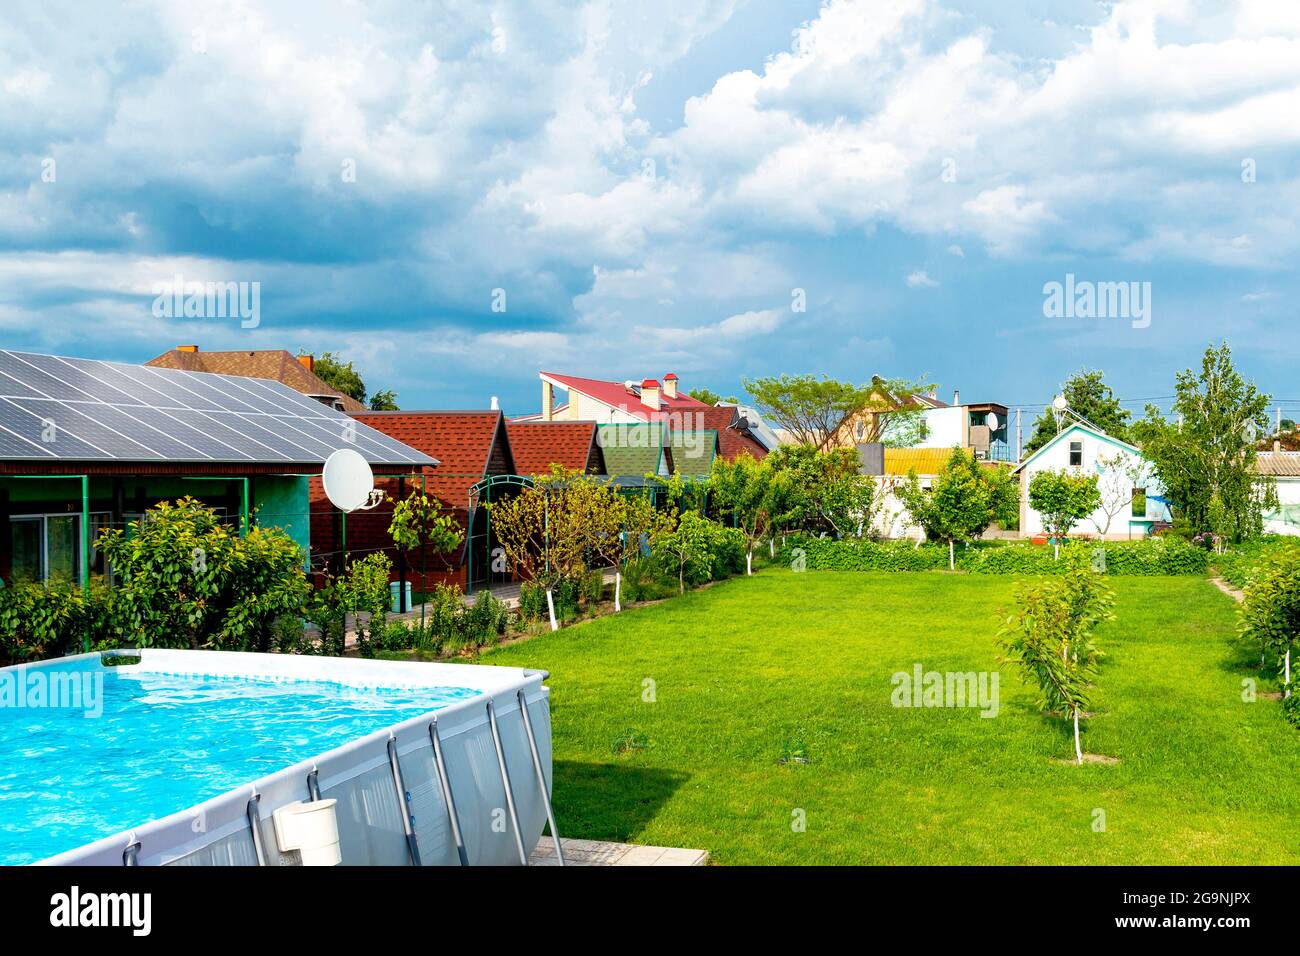 casa con giardino verde erba coperta, pannelli solari sul tetto, piscina con acqua blu Foto Stock